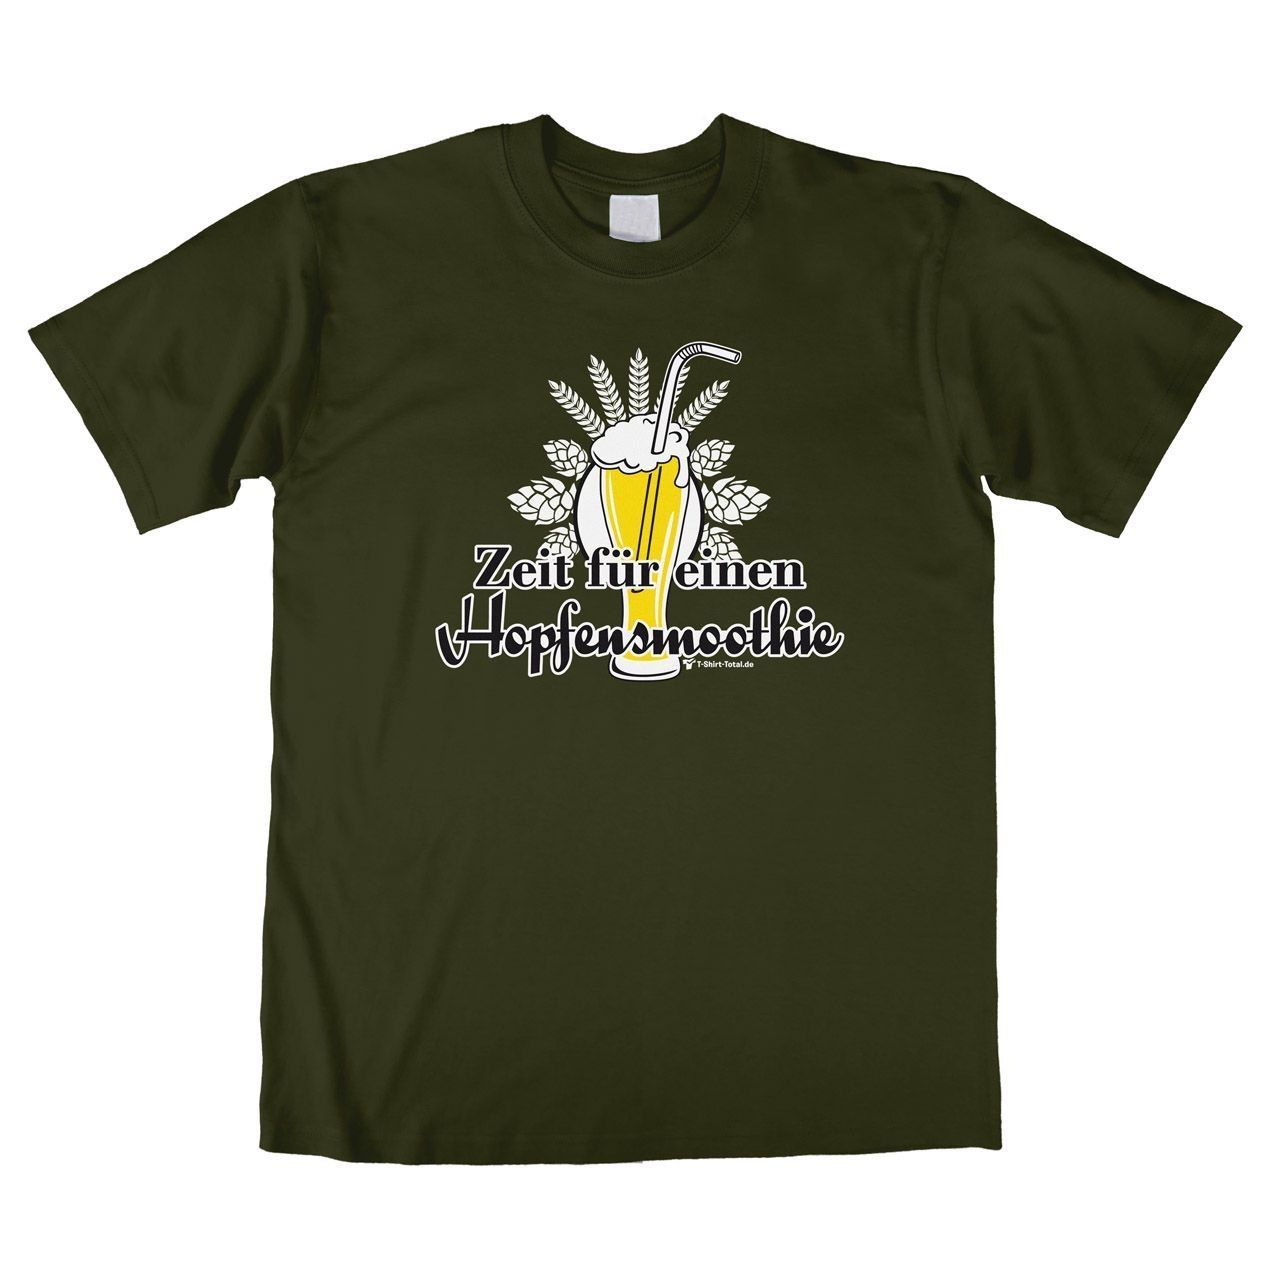 Hopfensmoothie Unisex T-Shirt khaki Large